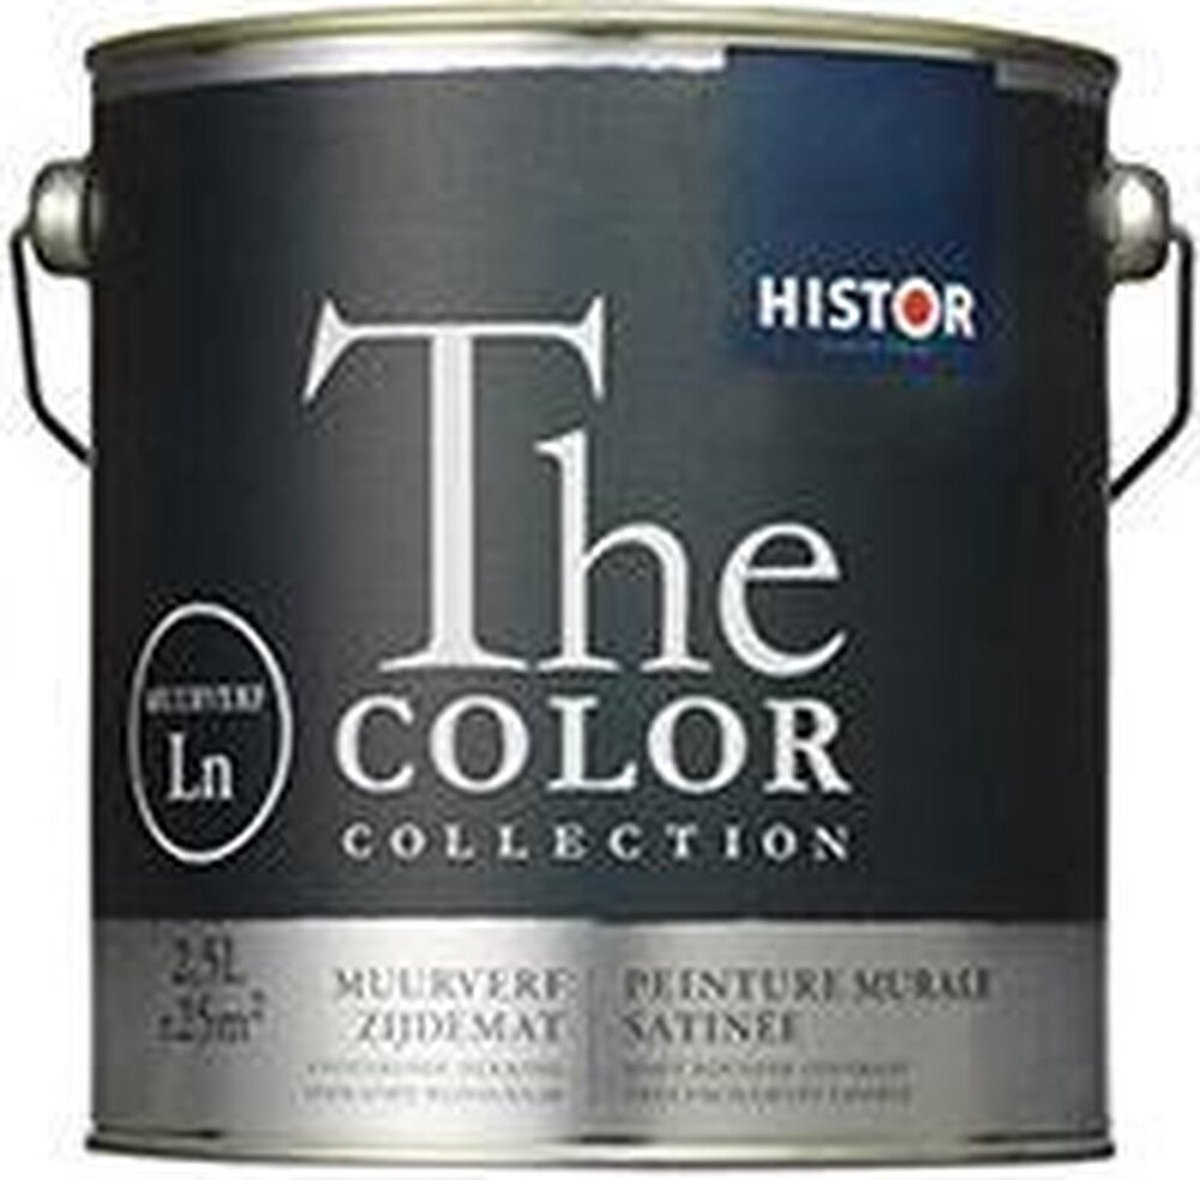 Histor The Color Collection Muurverf Zijdemat - Muurverf - Dekkend - Binnen - Water basis - Zijdemat -